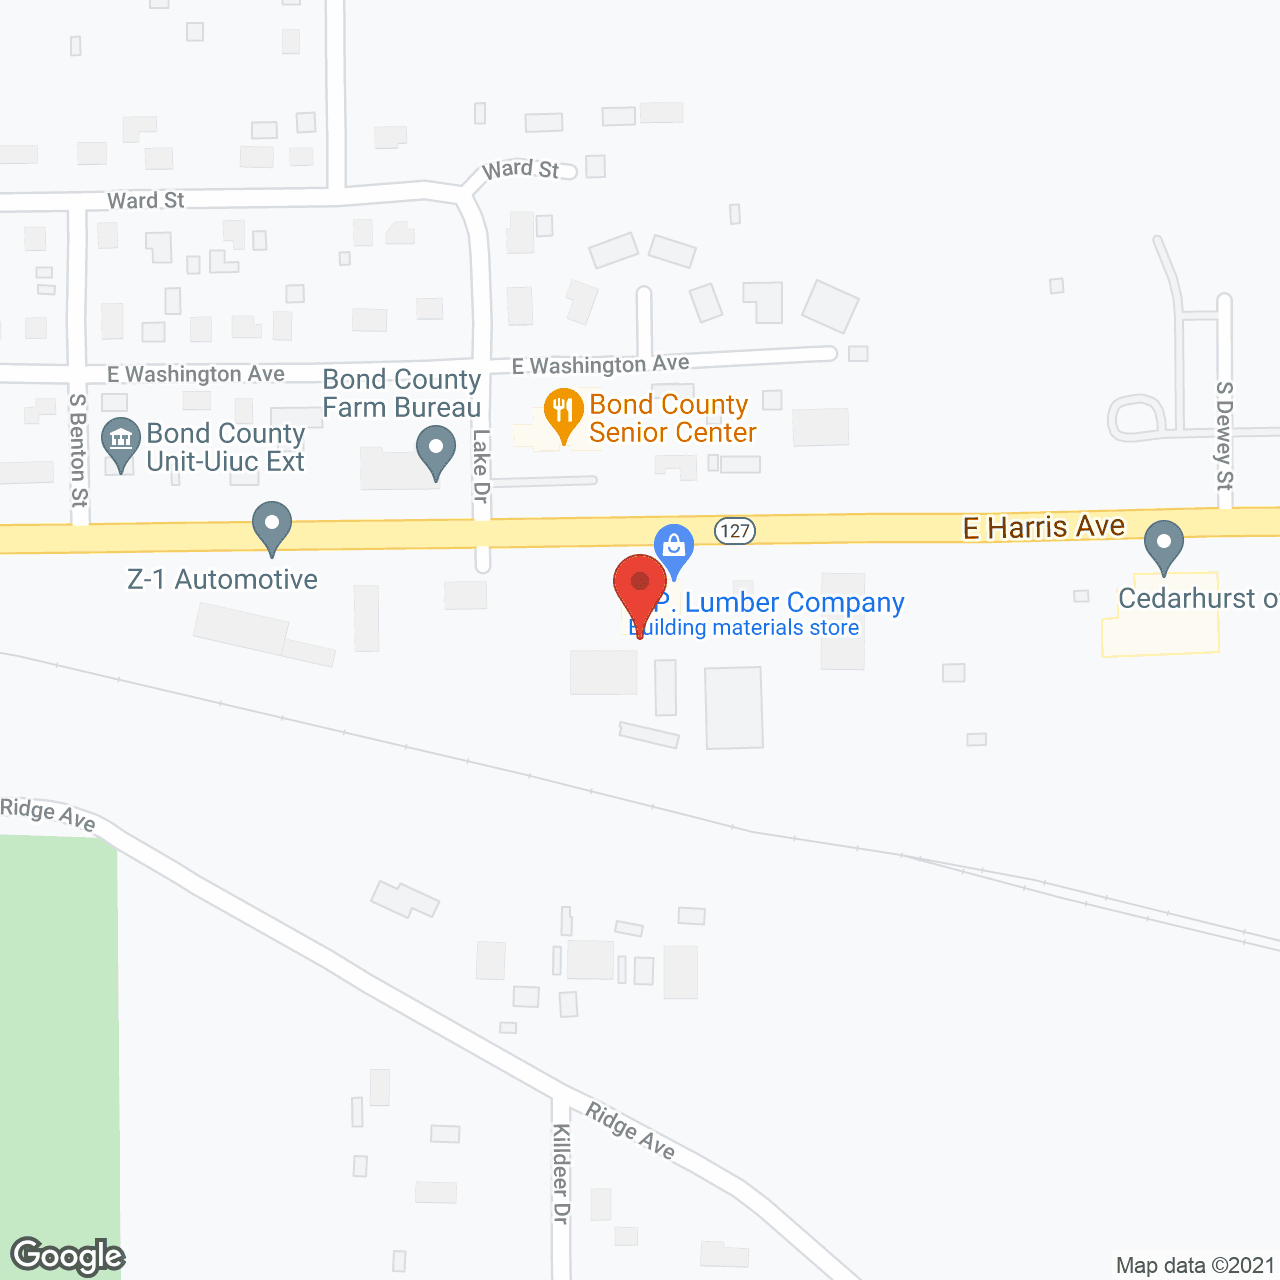 Cedarhurst of Greenville in google map